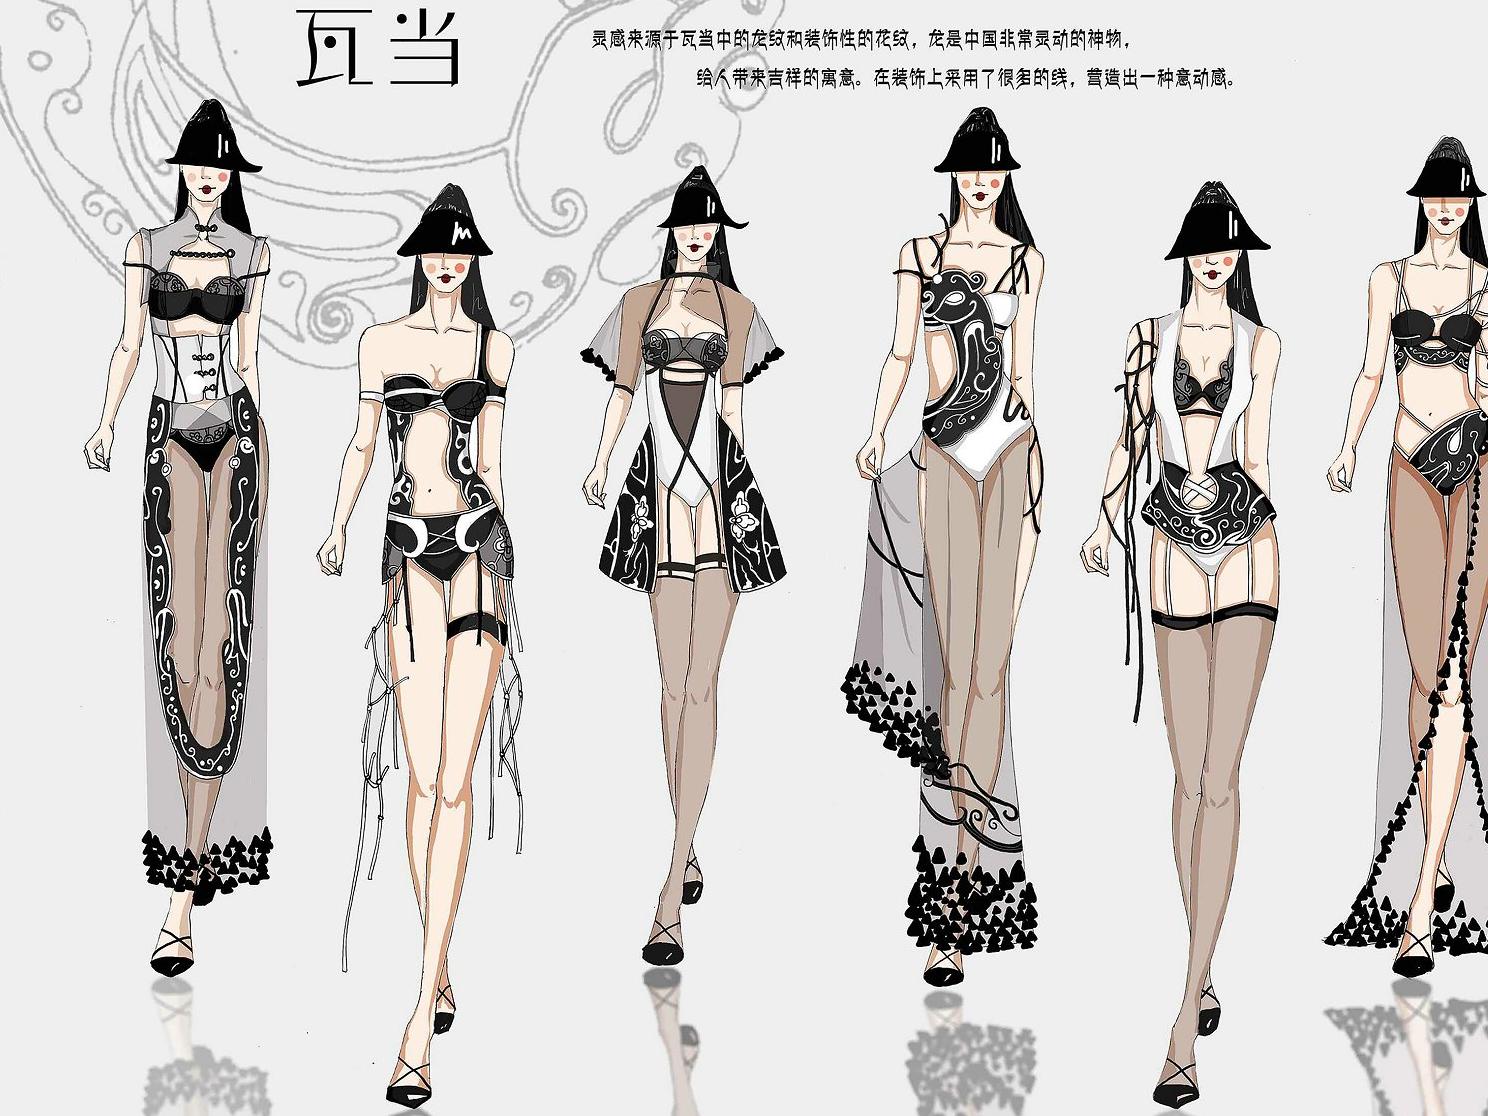 '魅力东方中国国际内衣创意设计大赛效果图